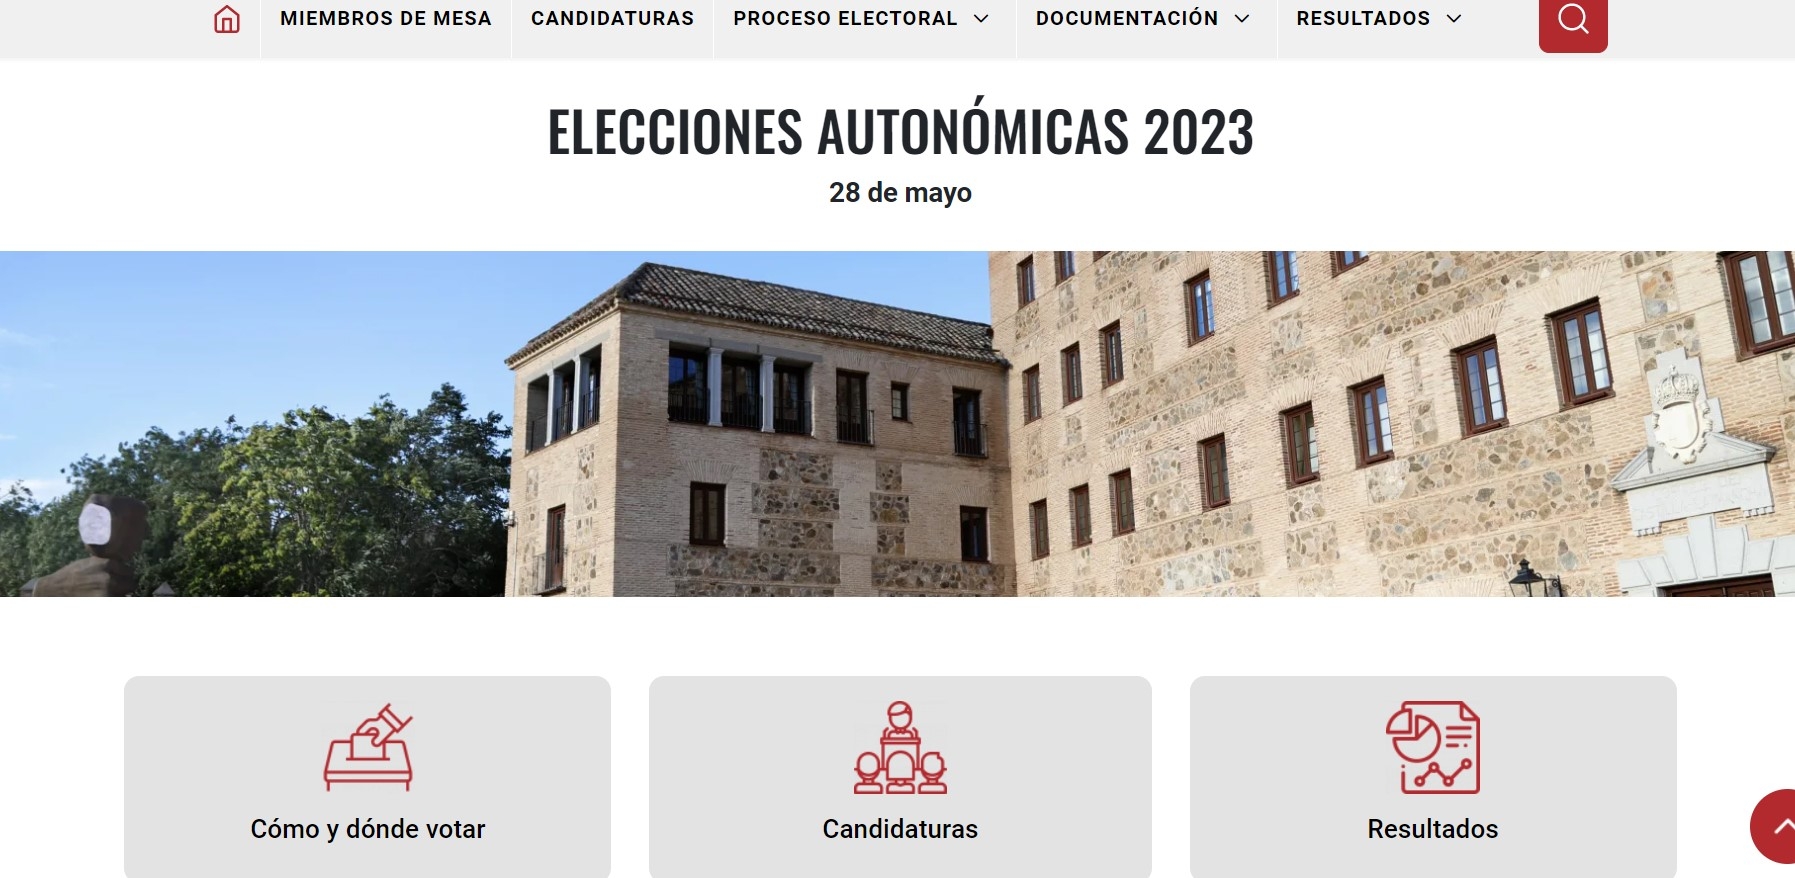 La web de las elecciones está adaptada a personas con discapacidad visual//Imagen: JCCM